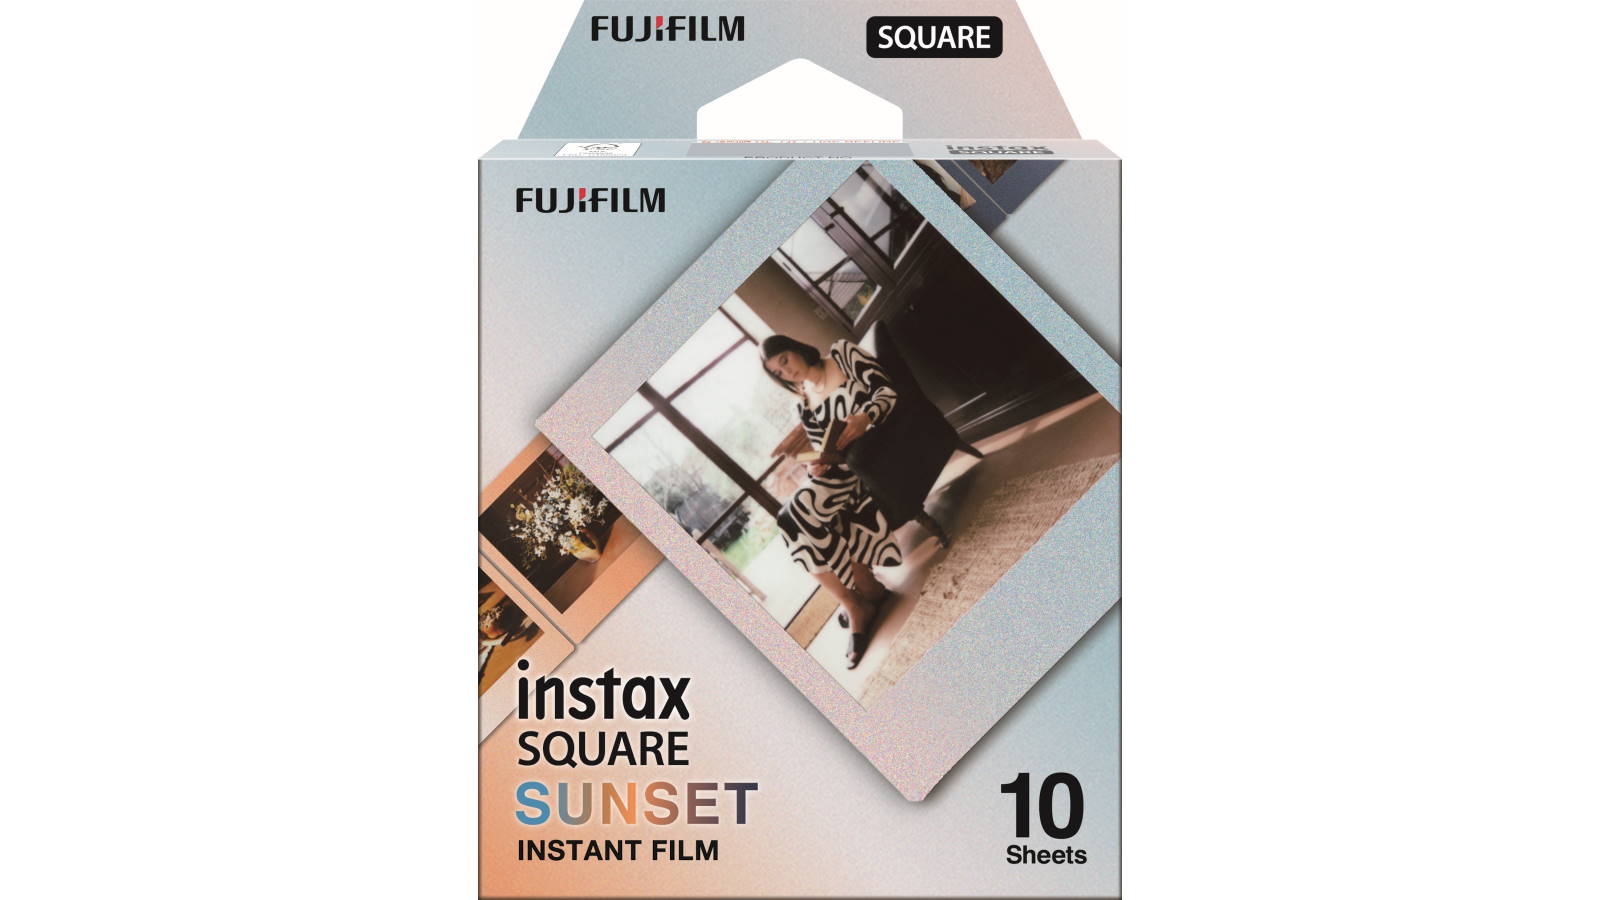 Papel Instax Mini x 10 films CANDY POP